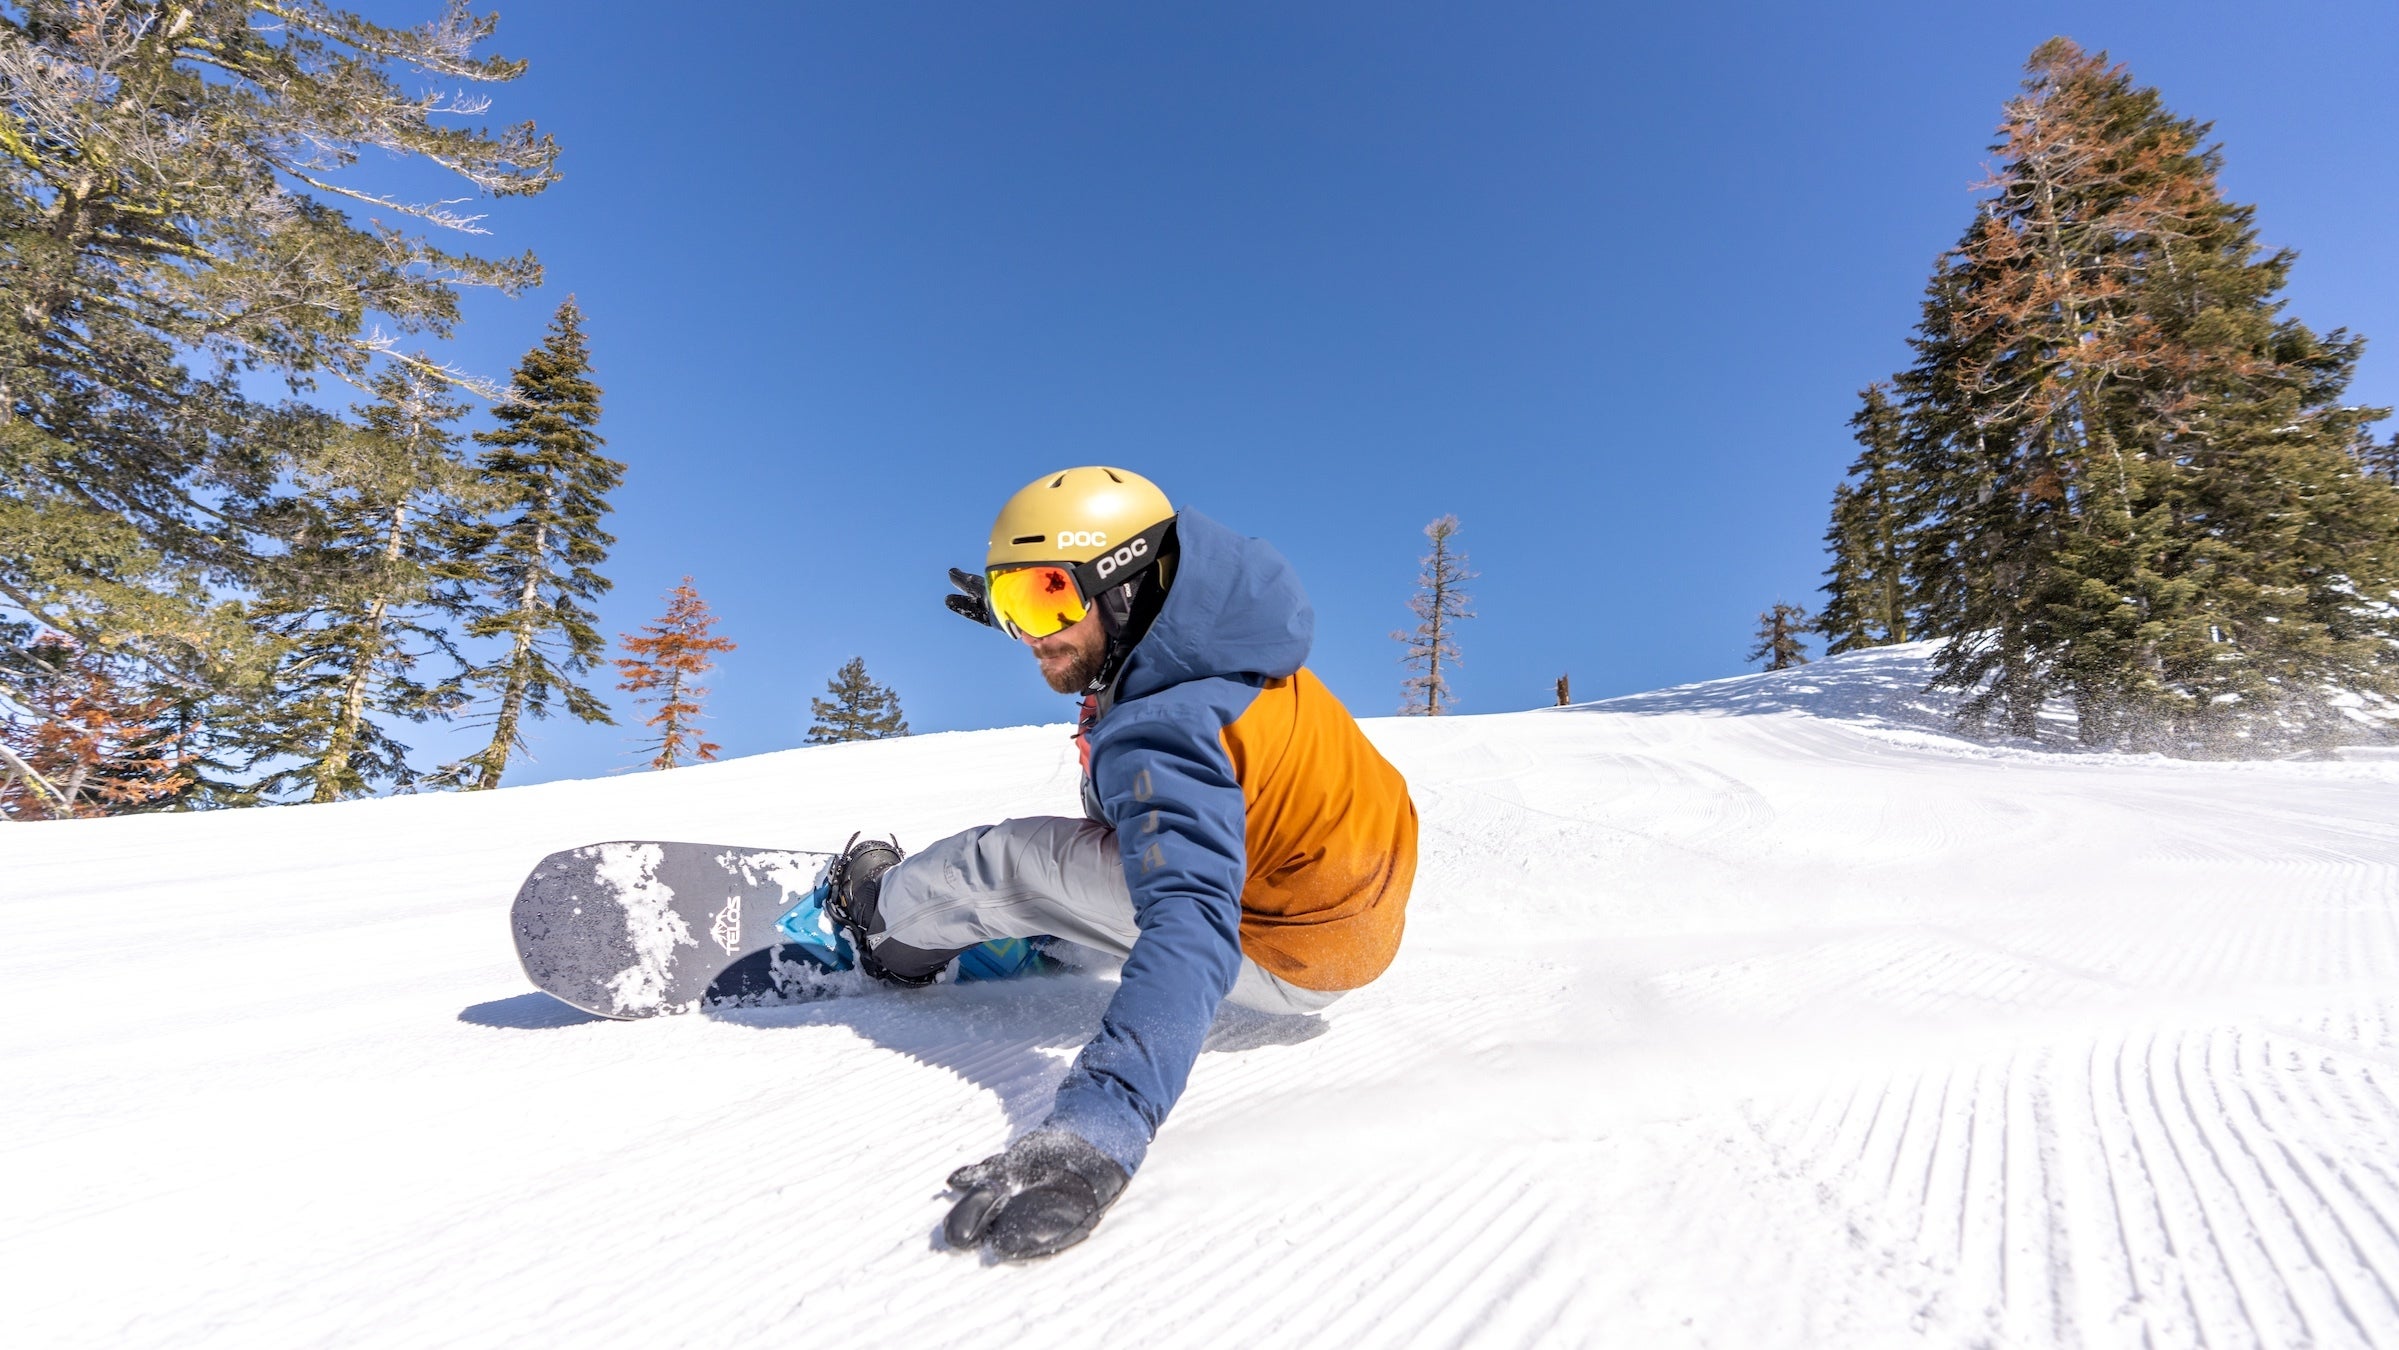 Winter Onesie, Bright Blue Jumpsuit, Snowboard Clothes, Snowboard